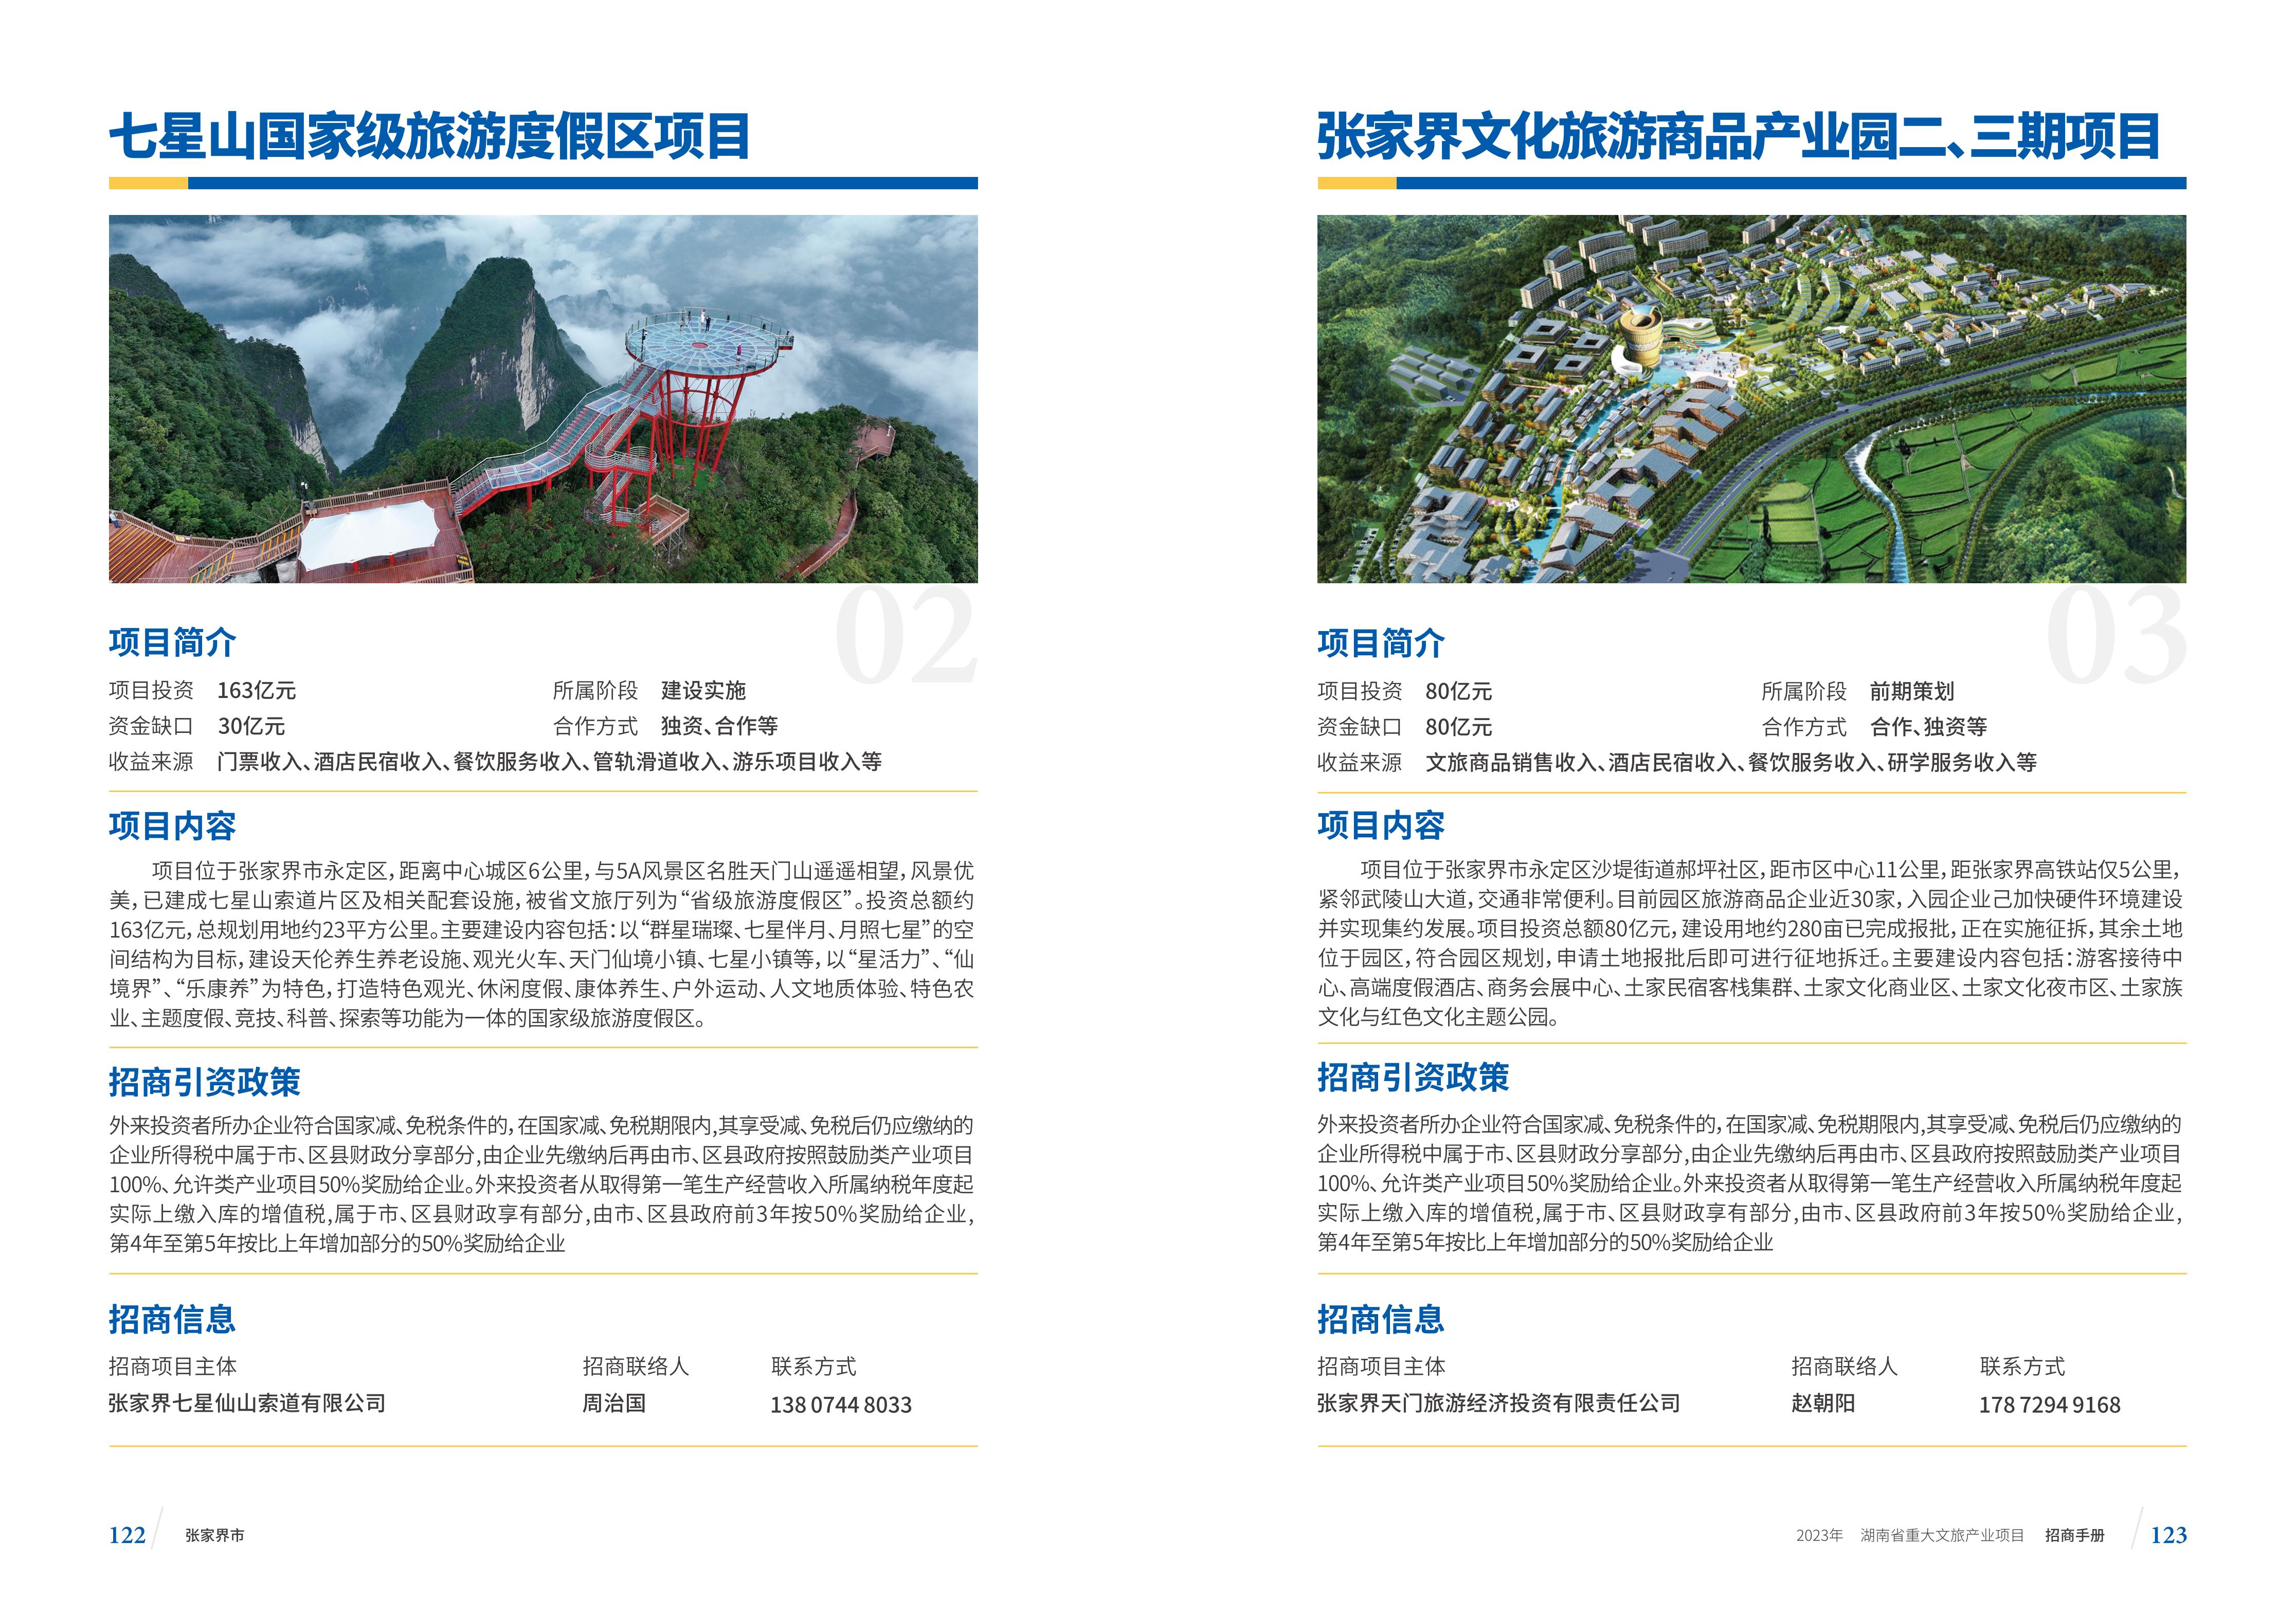 湖南省重大文旅产业项目招手册线上链接版_69.jpg